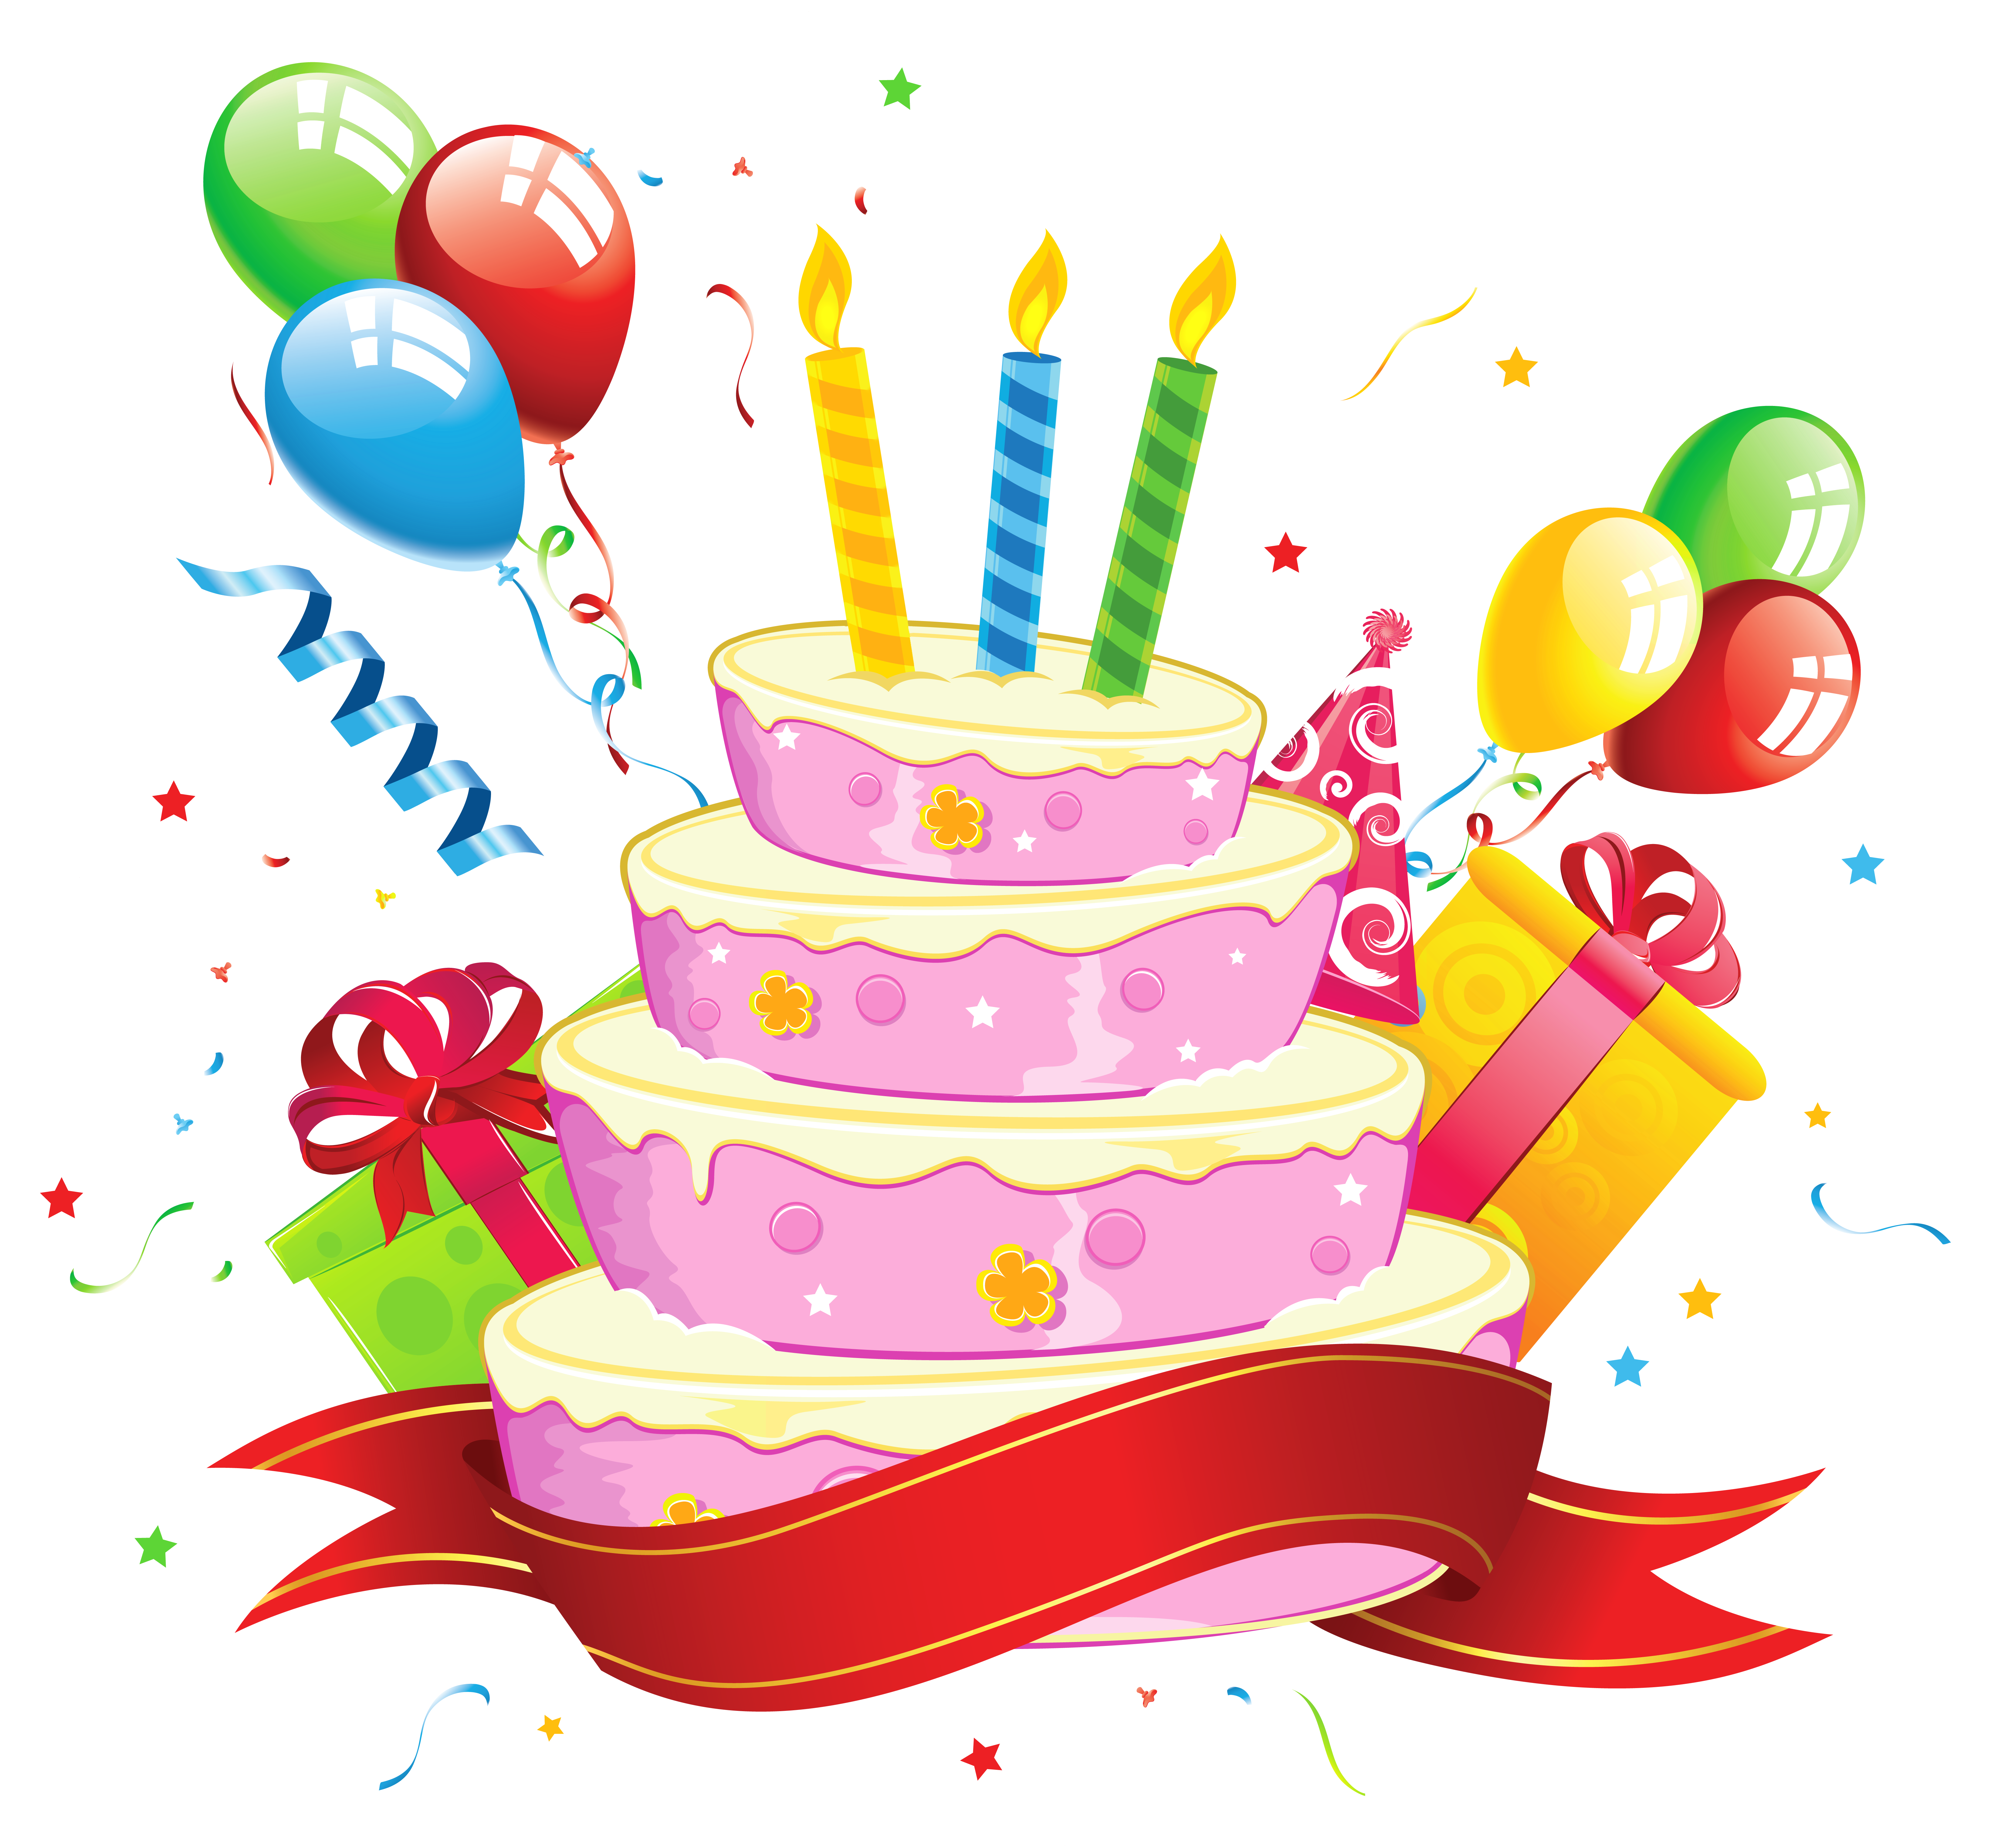 logo kue ulang tahun